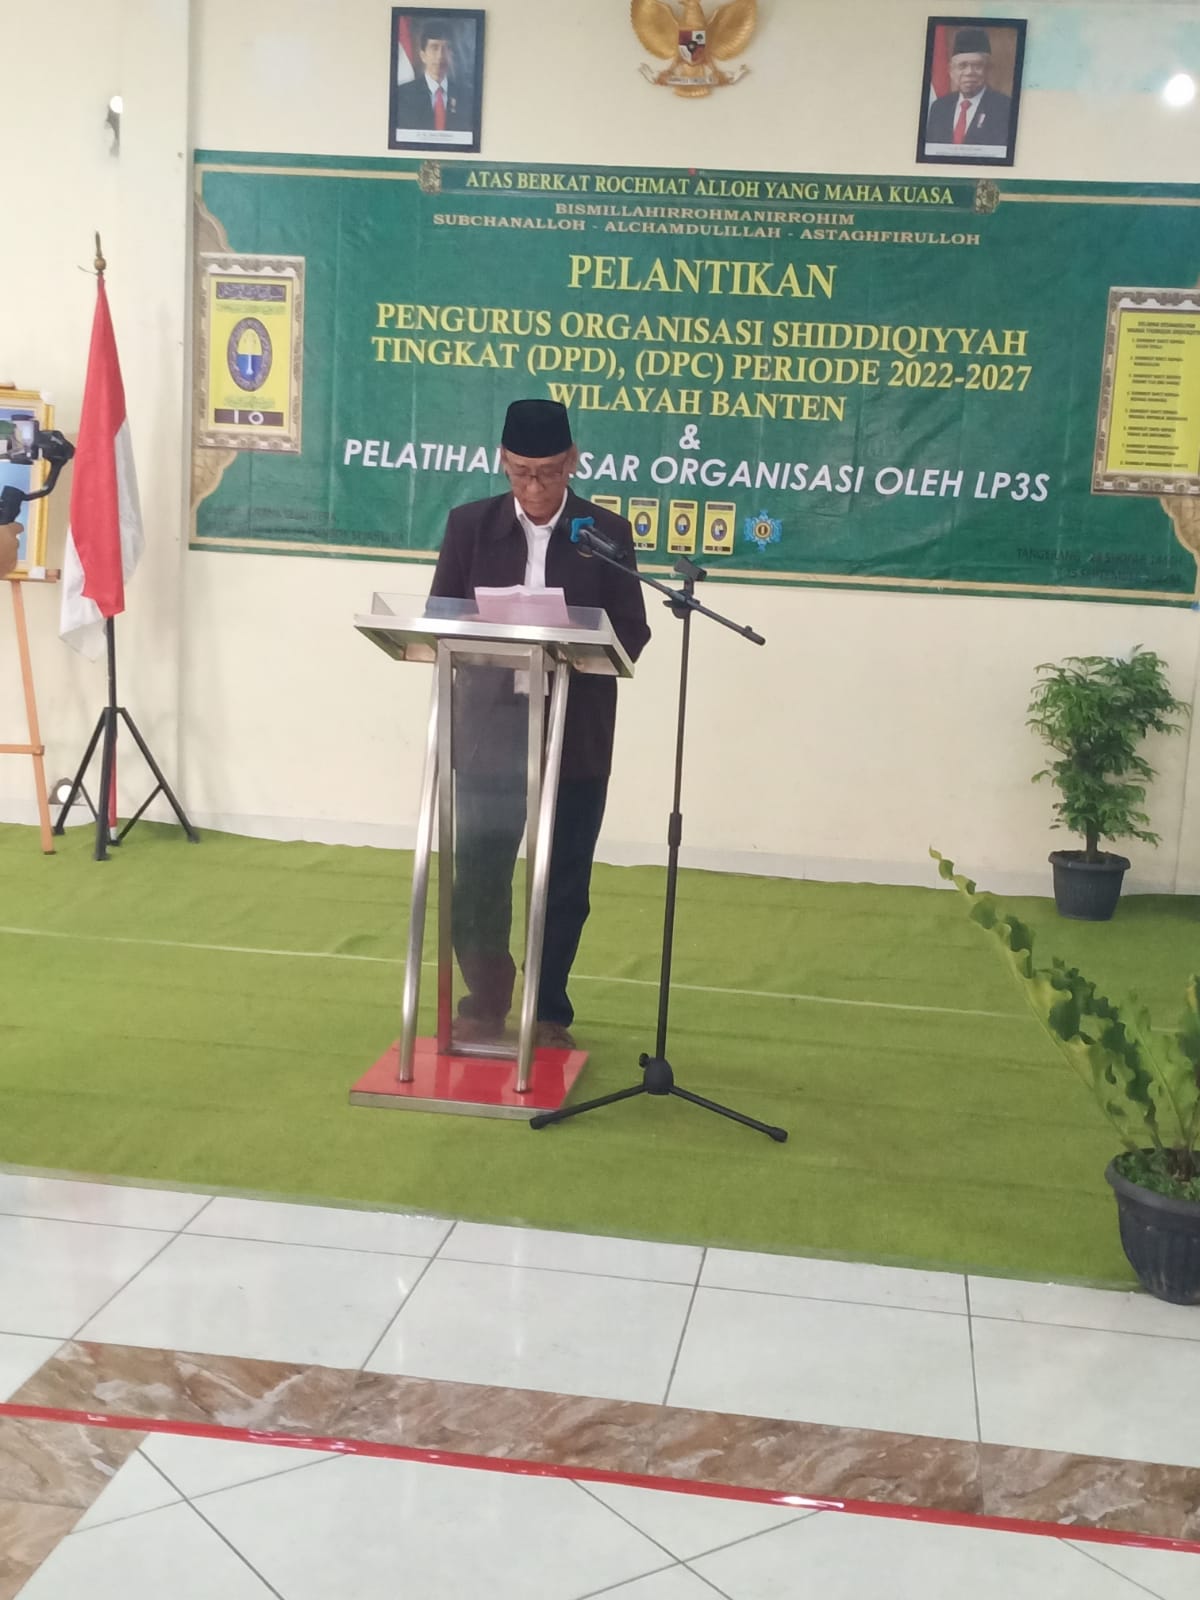 Pelantikan Pengurus Organisasi Shiddiqiyyah DPD Dan DPC Se Banten